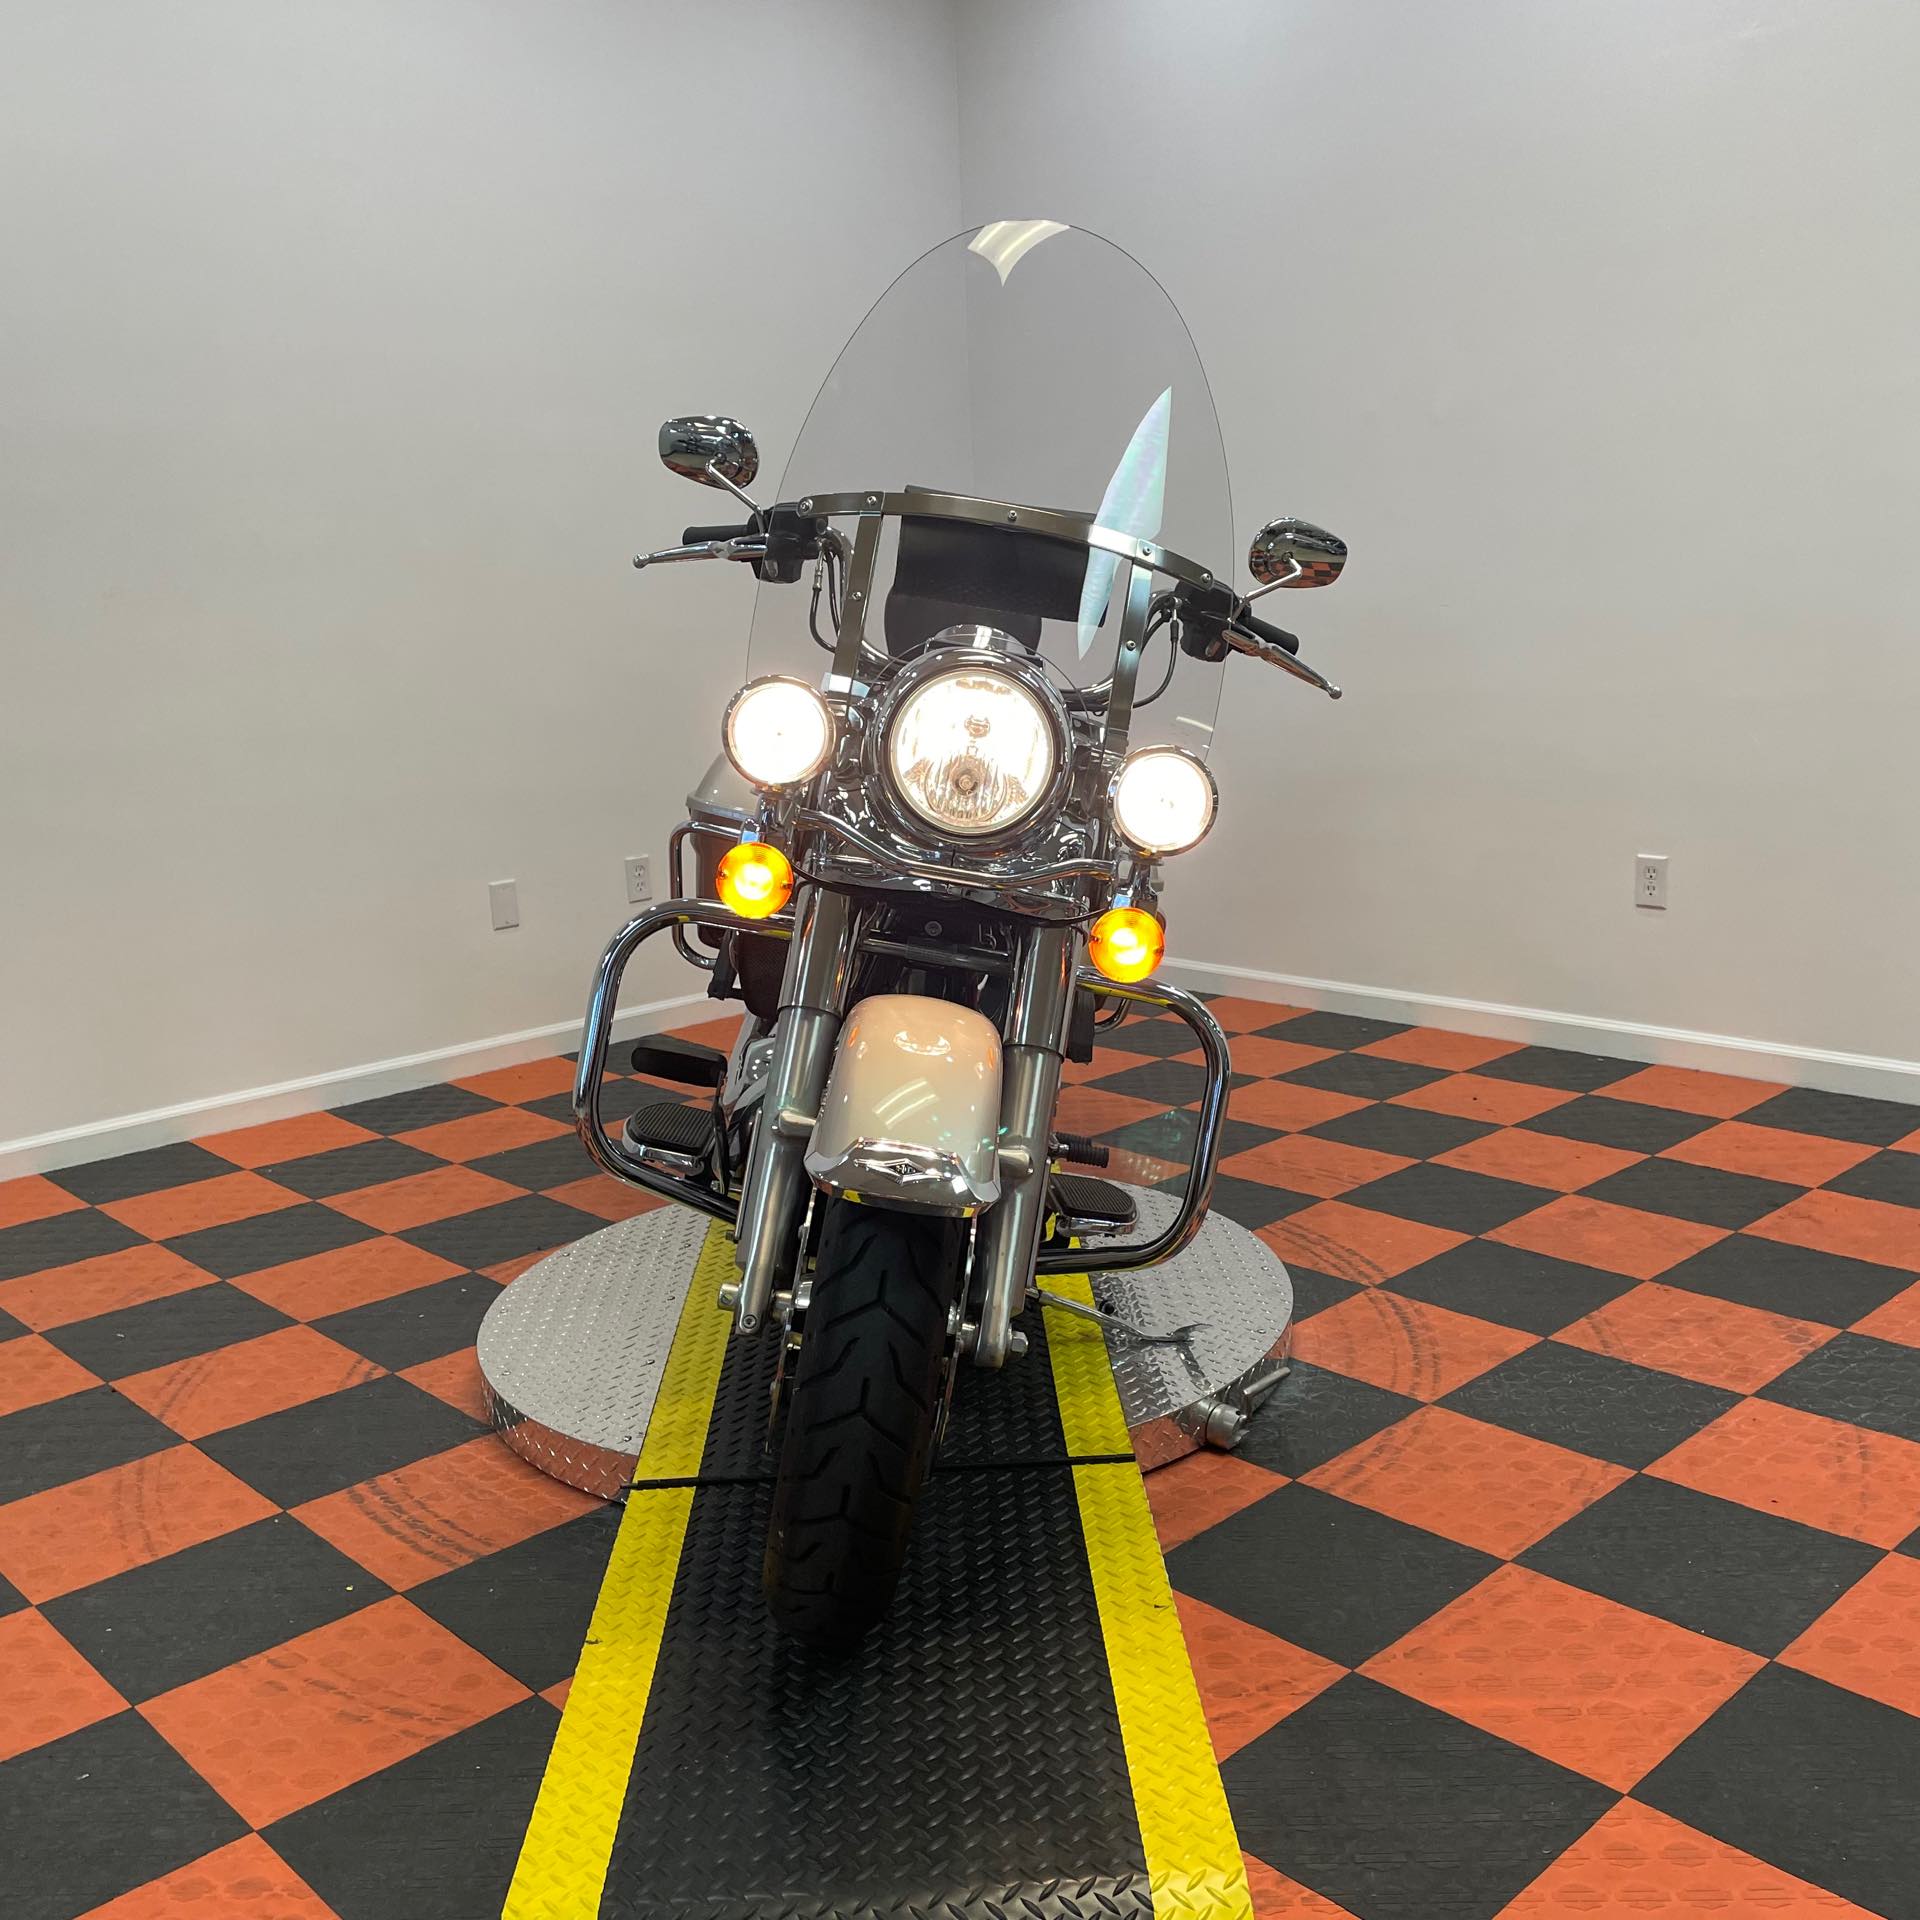 2018 Harley-Davidson Road King Base at Harley-Davidson of Indianapolis